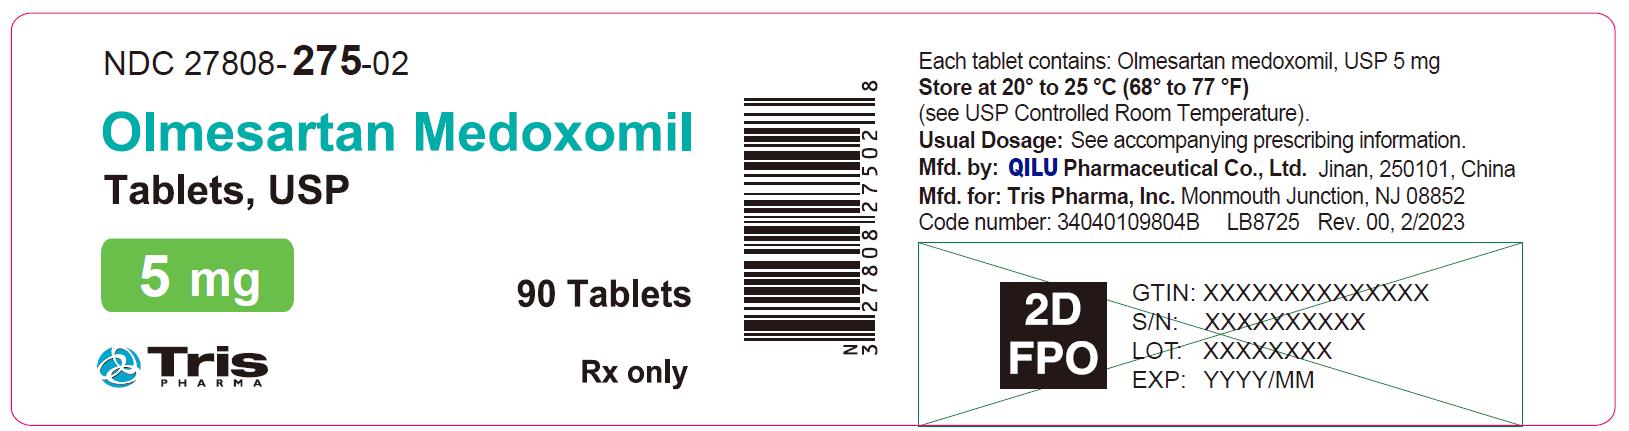 Olmesartan Medoxomil Tablets 5 mg Bottle Label - 90 Tablets